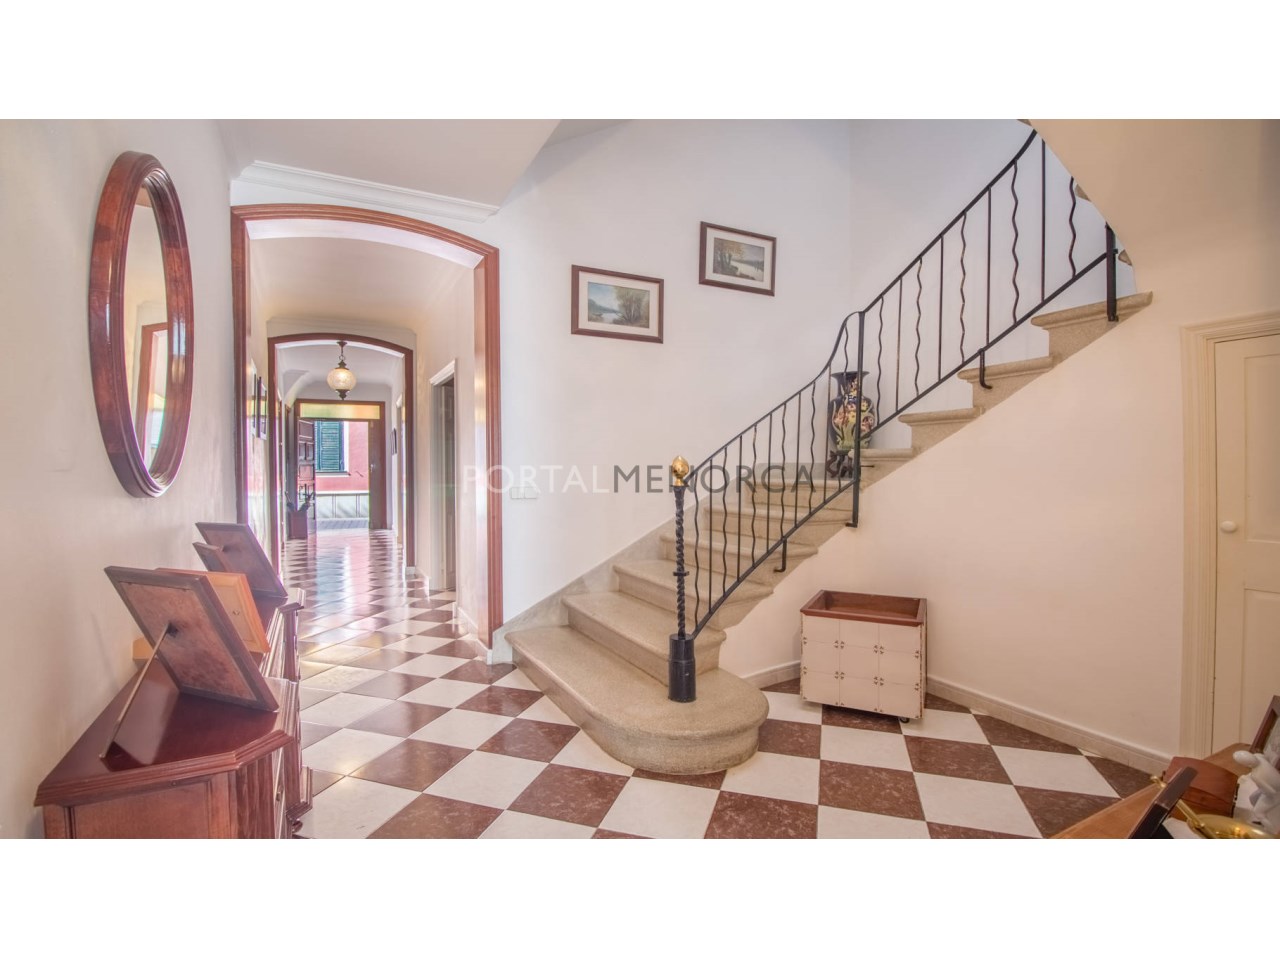 Casa antigua en venta en Menorca